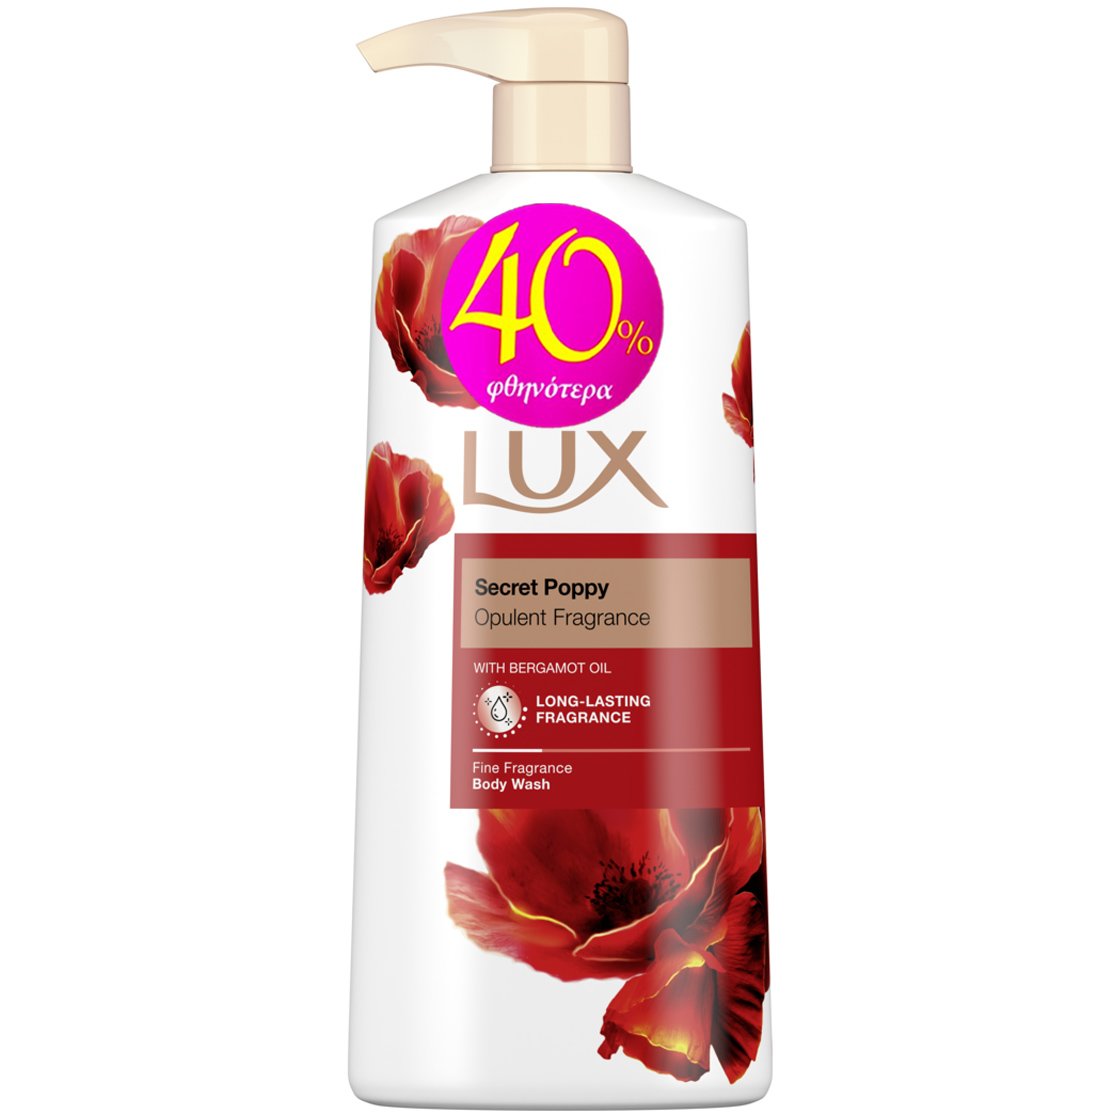 Lux Secret Poppy Body Wash Αφρόλουτρο με Γοητευτικό Άρωμα από Άνθη Γιασεμιού για Βελούδινη Επιδερμίδα 600ml Promo -40%